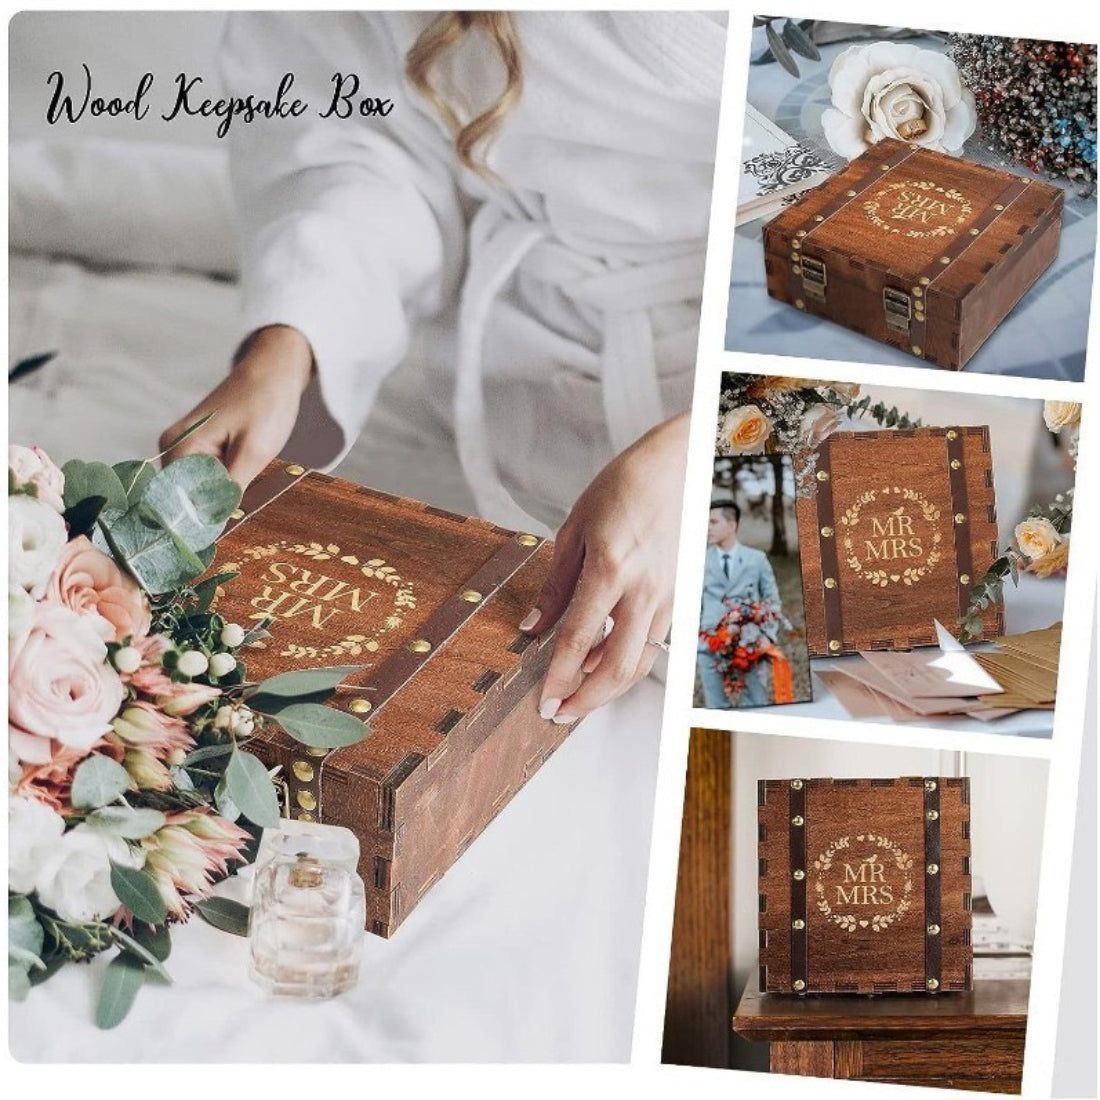 お土産メモリーボックス、カバー付き結婚式のお土産ボックス、7.87*7.87*2.95インチ、素朴な装飾の木製収納ボックス、結婚記念日やカップルのギフトに最適